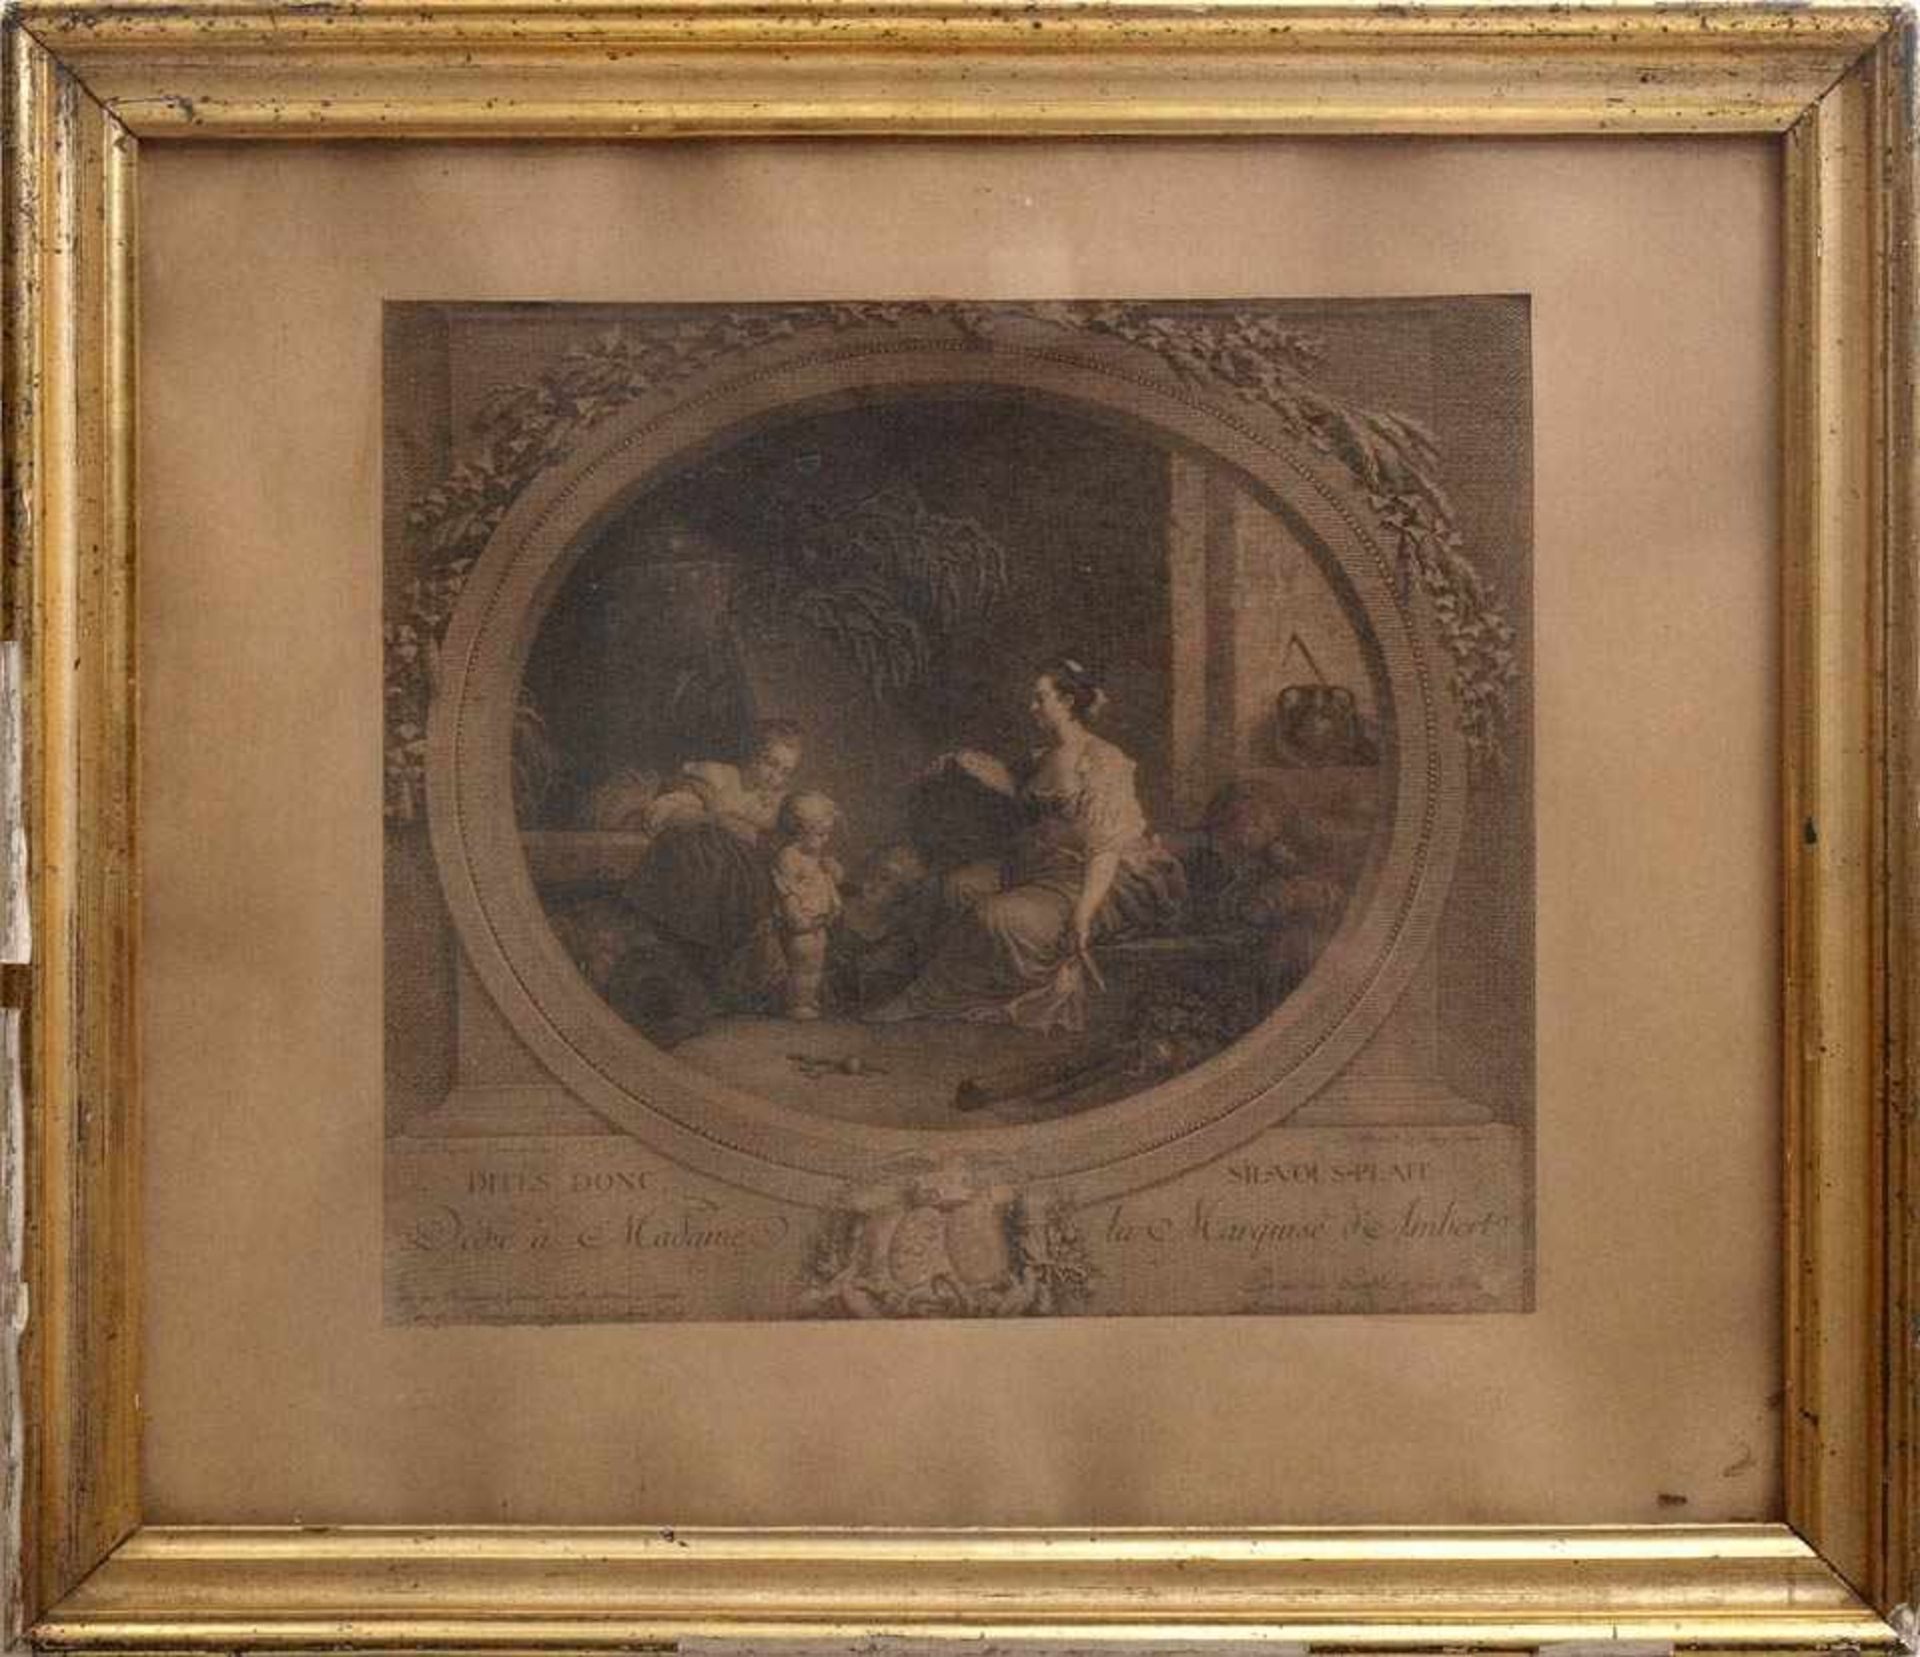 Delaunay, N., 1739 - 1792Kupferstich nach einem Gemälde von Fragonard. Ovaler Bildausschnitt,